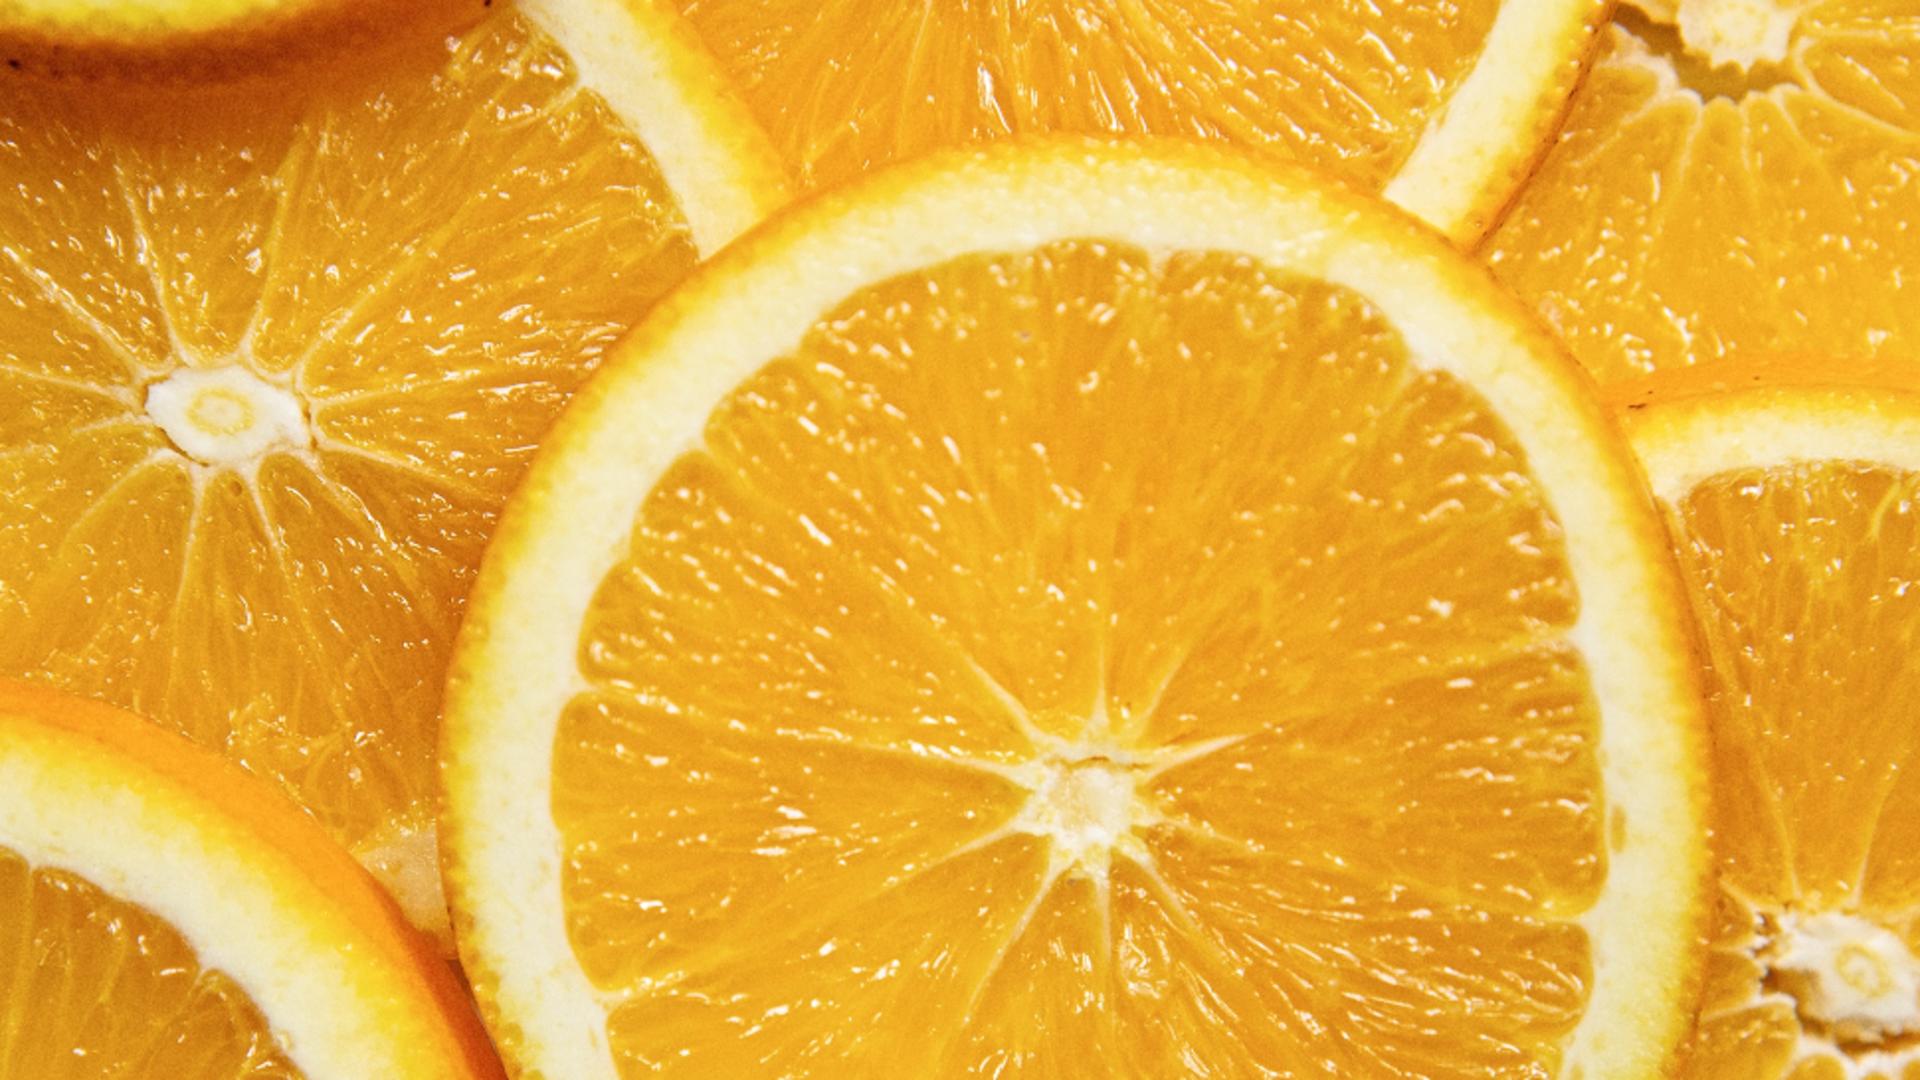 Motivul uimitor pentru care tot mai mulți oameni pun coajă de portocală în dormitor. Vei fi surprins/ Foto: unsplash.com